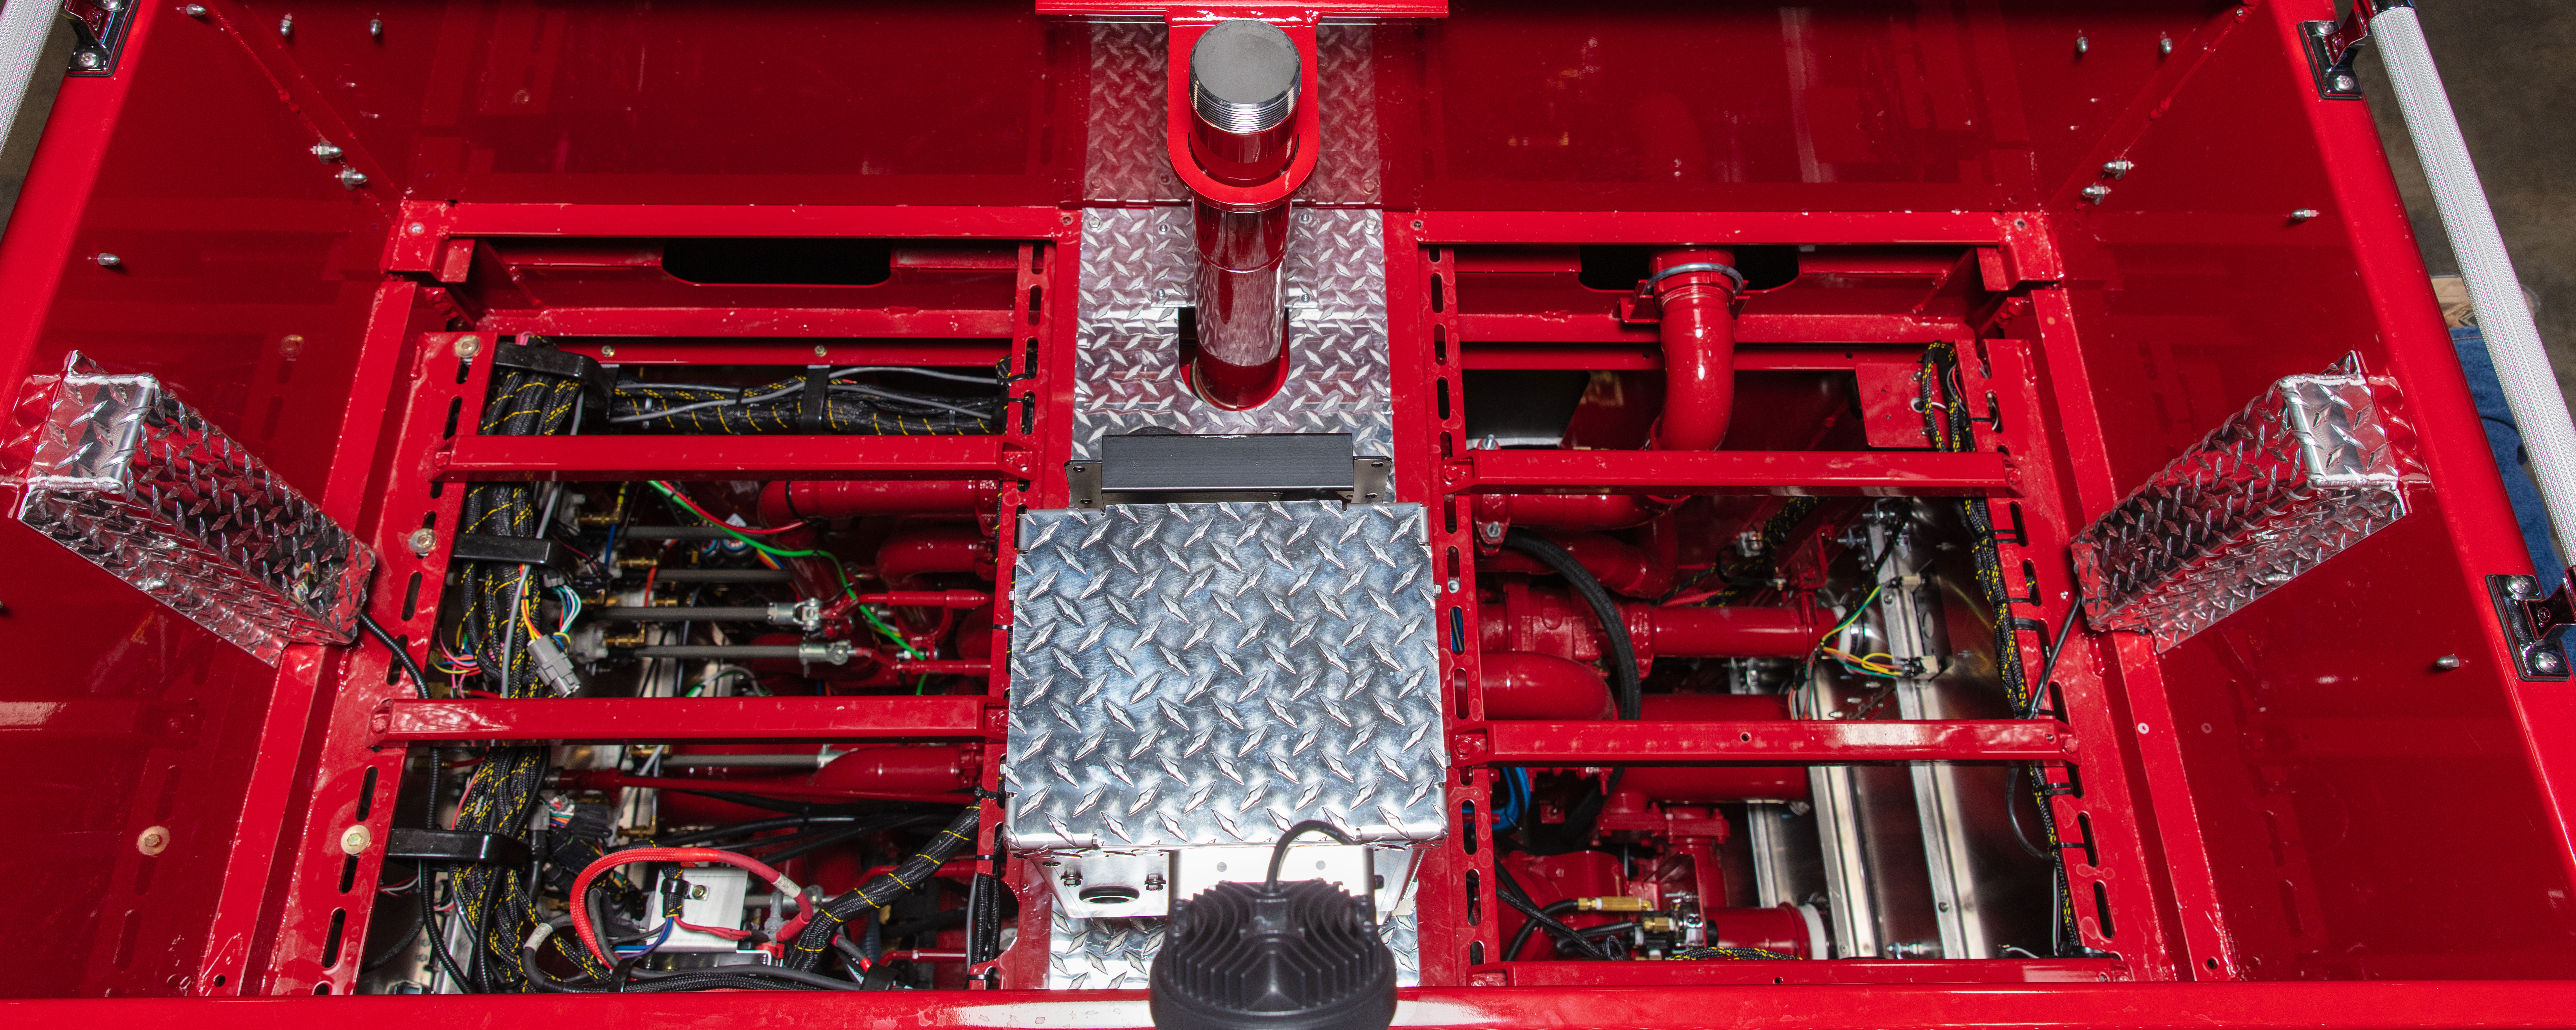 Fire Truck Pump Panel Top View 